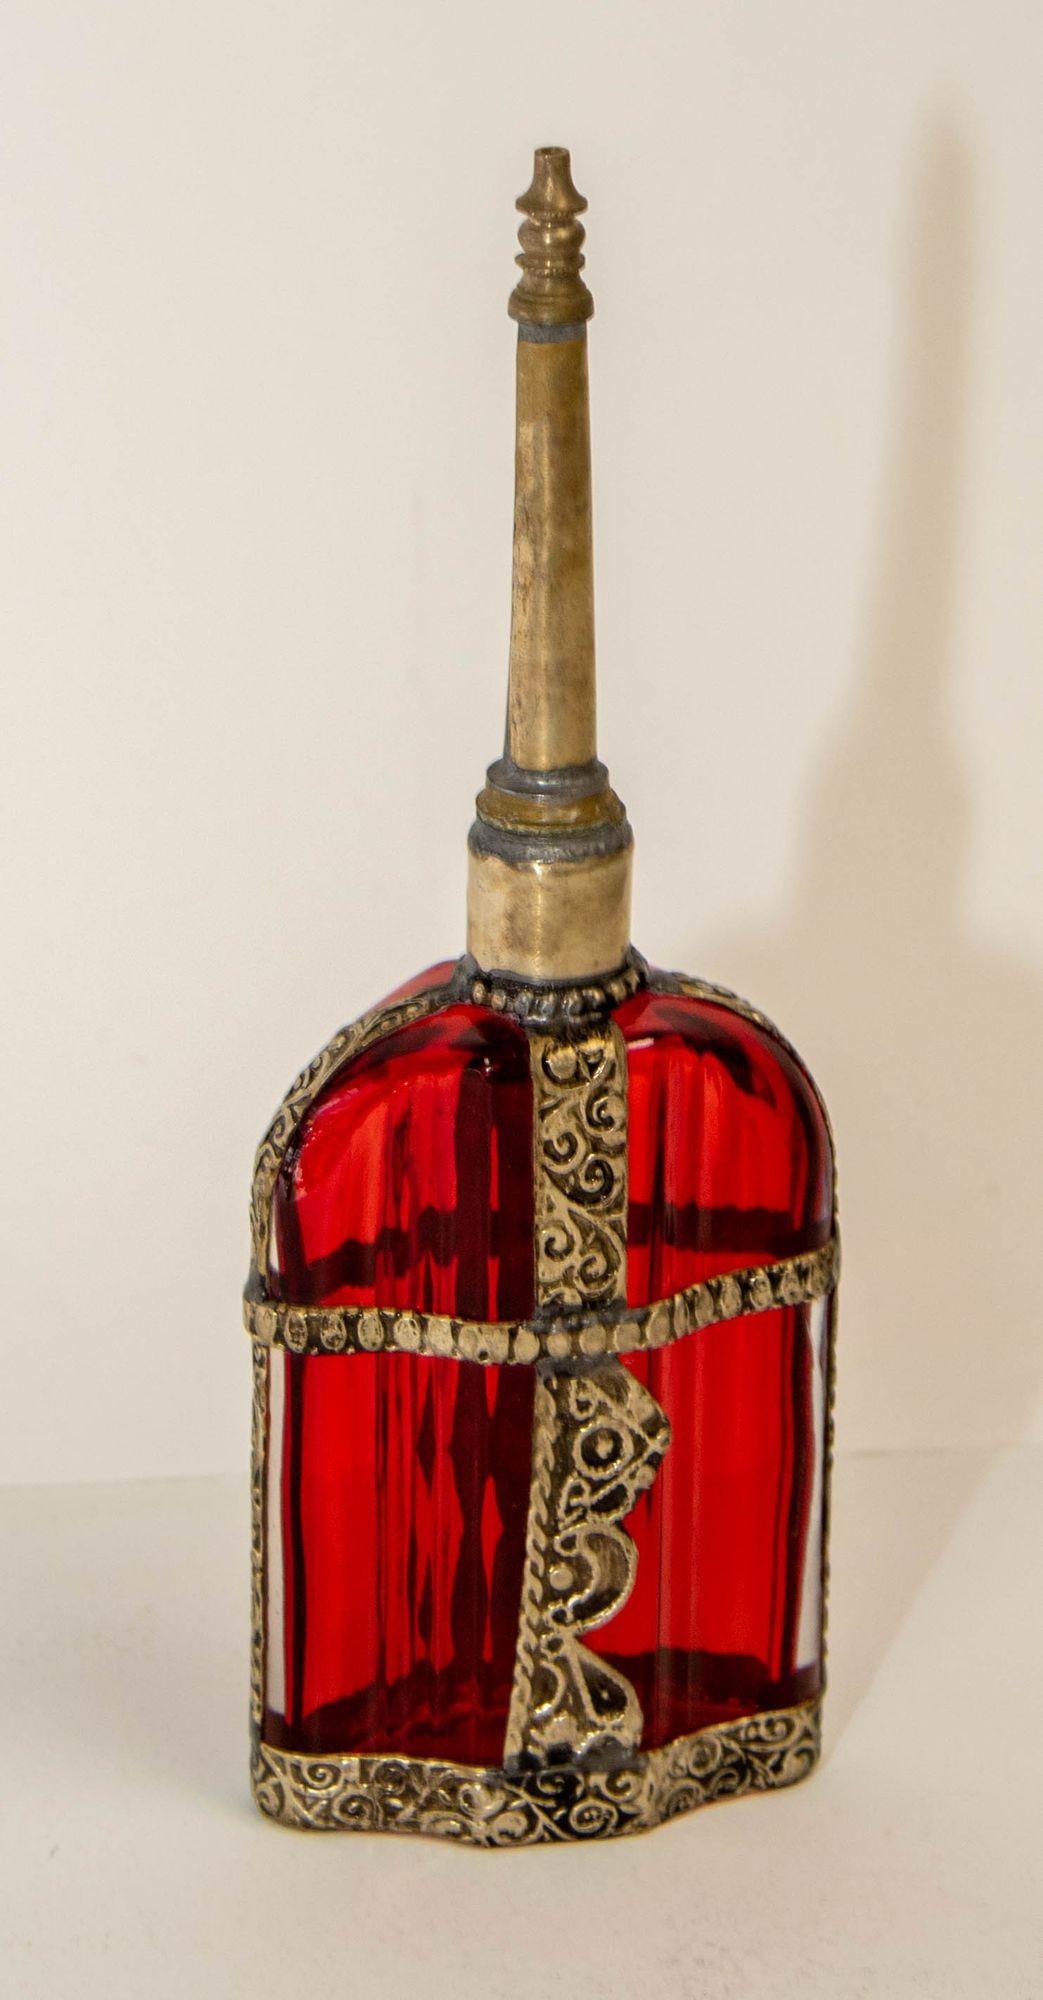 Vintage dekorative marokkanischen roten Glas Parfüm Flasche Sprinkler mit geprägtem Metall-Overlay.
Handgefertigter marokkanischer Parfümflakon aus rot bemaltem Glas oder Rosenwasserzerstäuber mit erhabenem, versilbertem Blumendesign aus Metall über